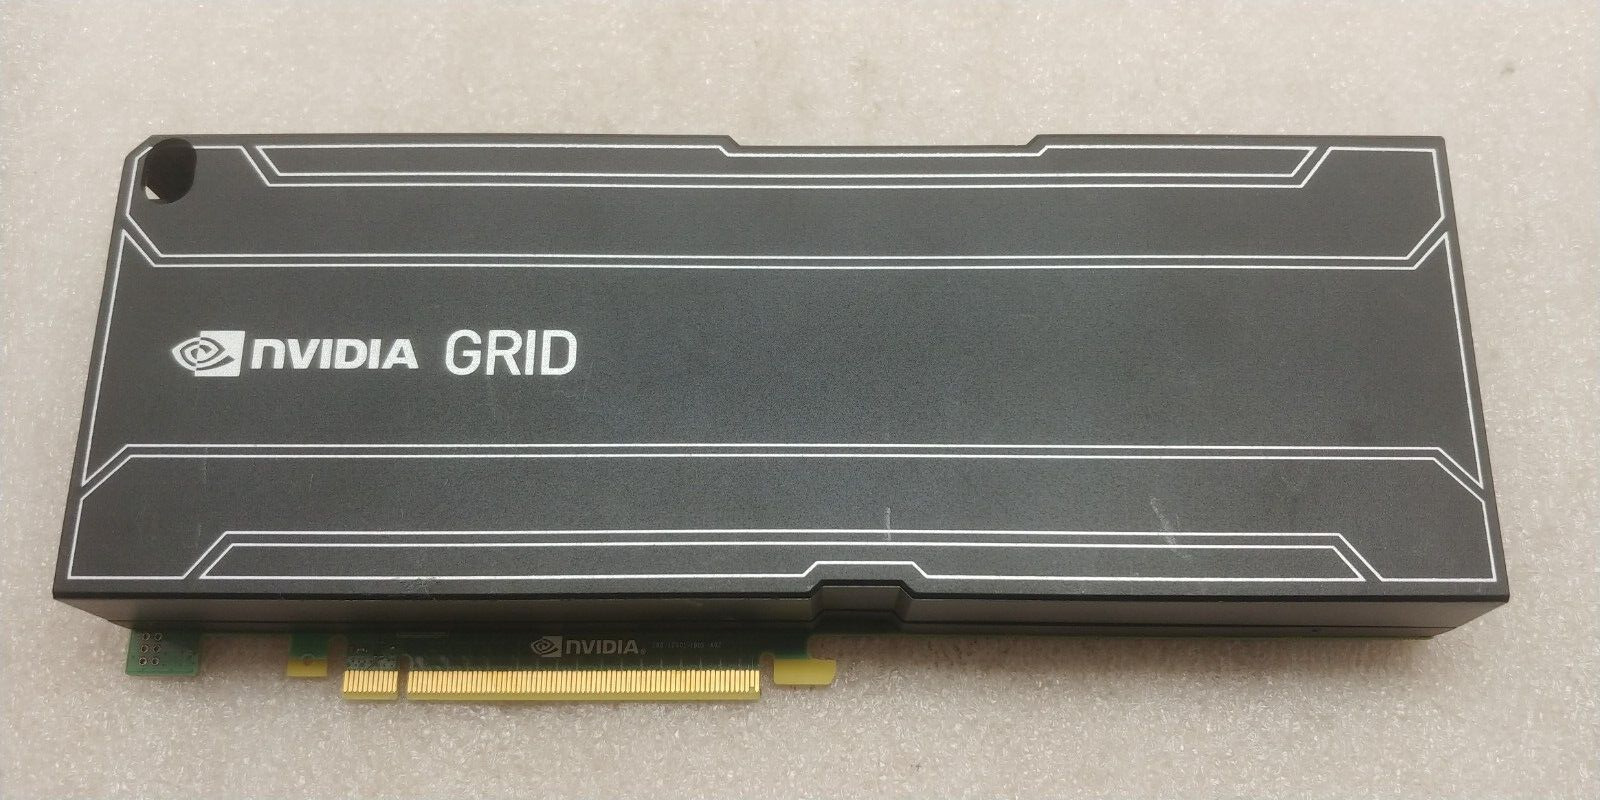 HP 180-12401-1005-A02 - NVIDIA Grid K1 16GB Kepler DDR3 PCI-E GPU Accelerator FS